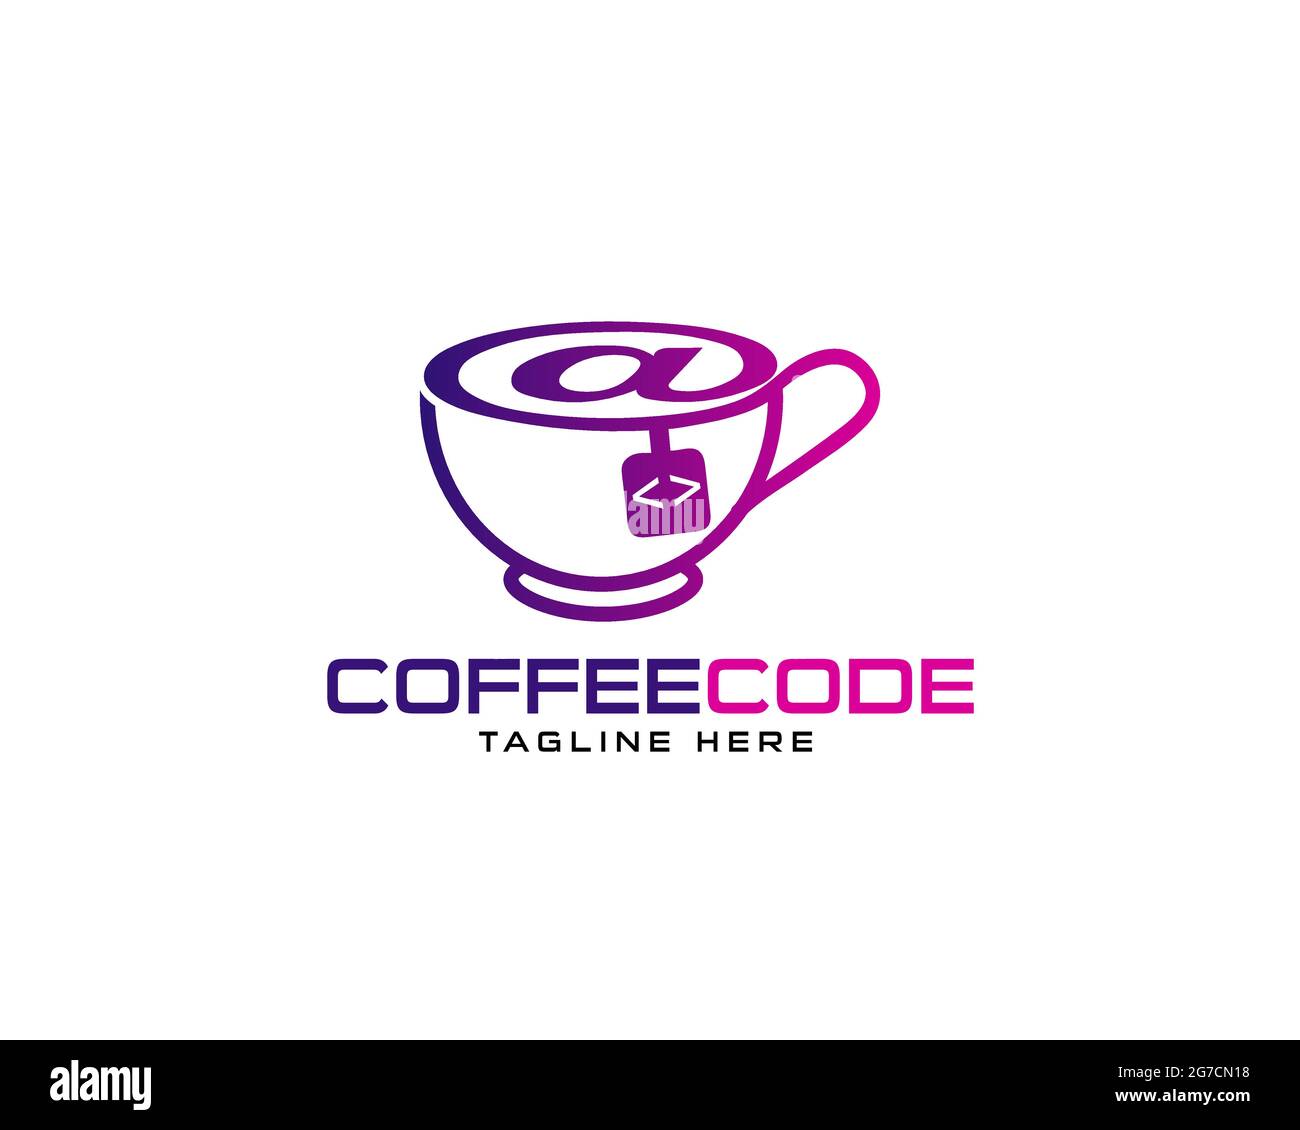 Codice caffè il logo può essere utilizzato come segno, icona o simbolo, vettore a livelli completi e facile da modificare e personalizzare dimensioni e colori, compatibile con quasi Illustrazione Vettoriale